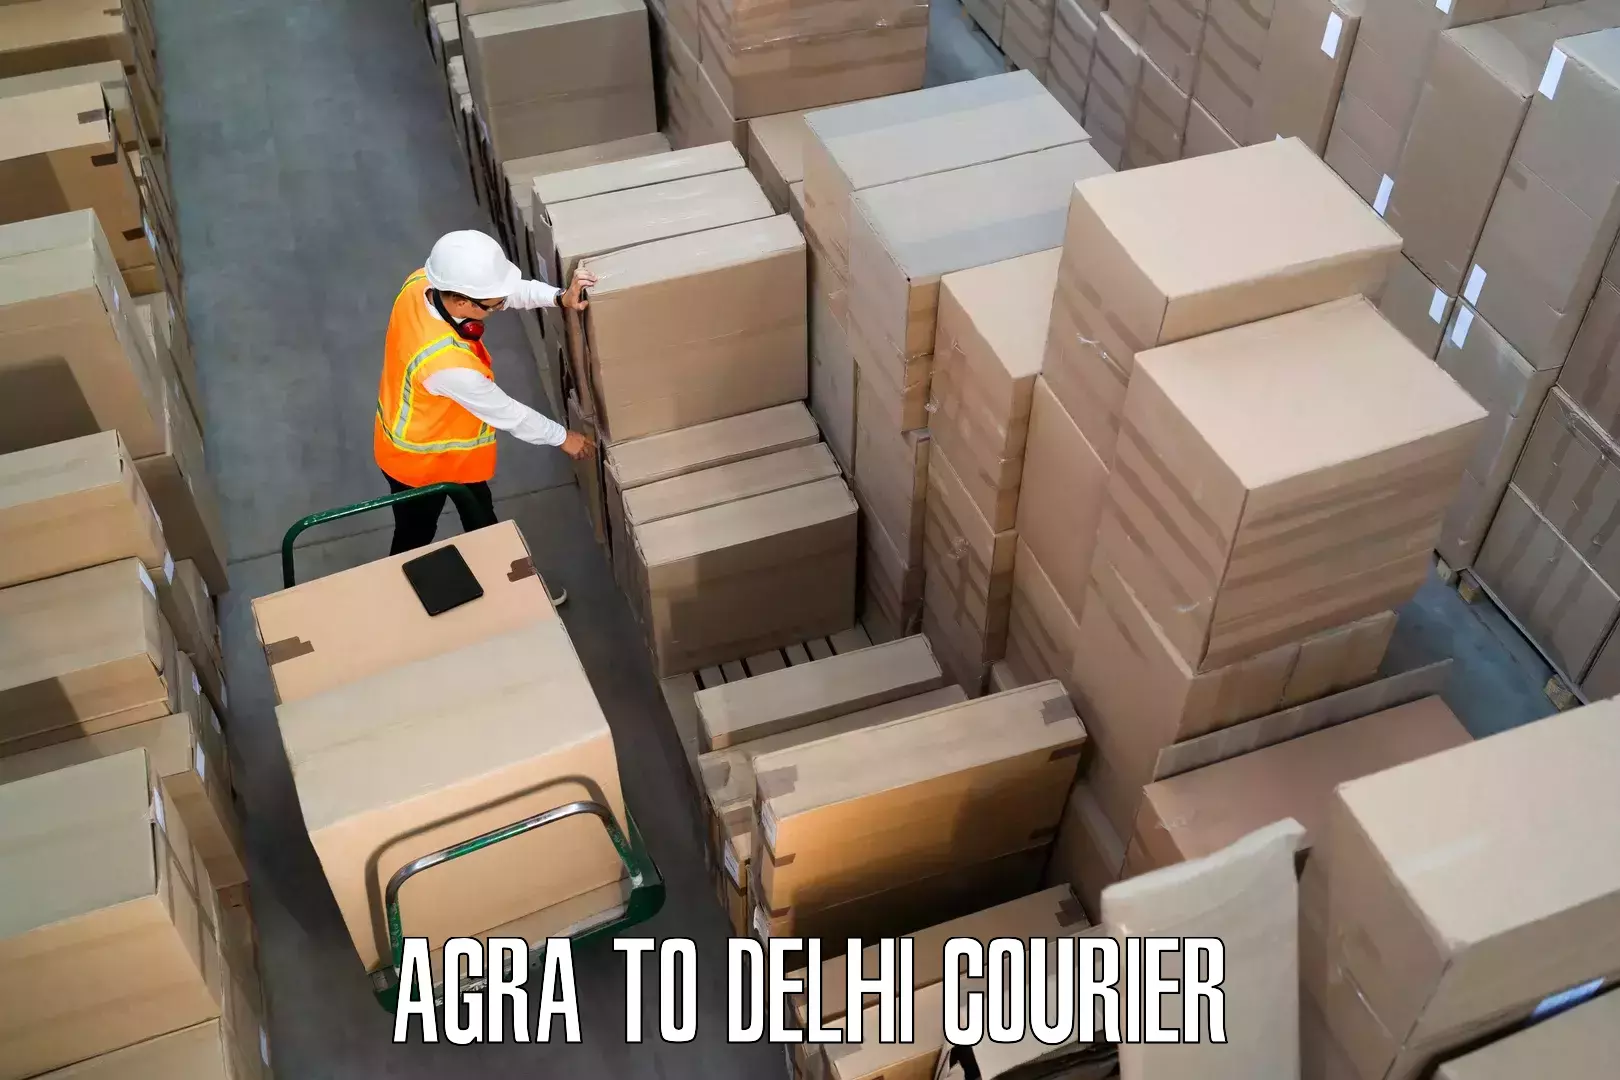 Household goods transporters Agra to Ashok Vihar